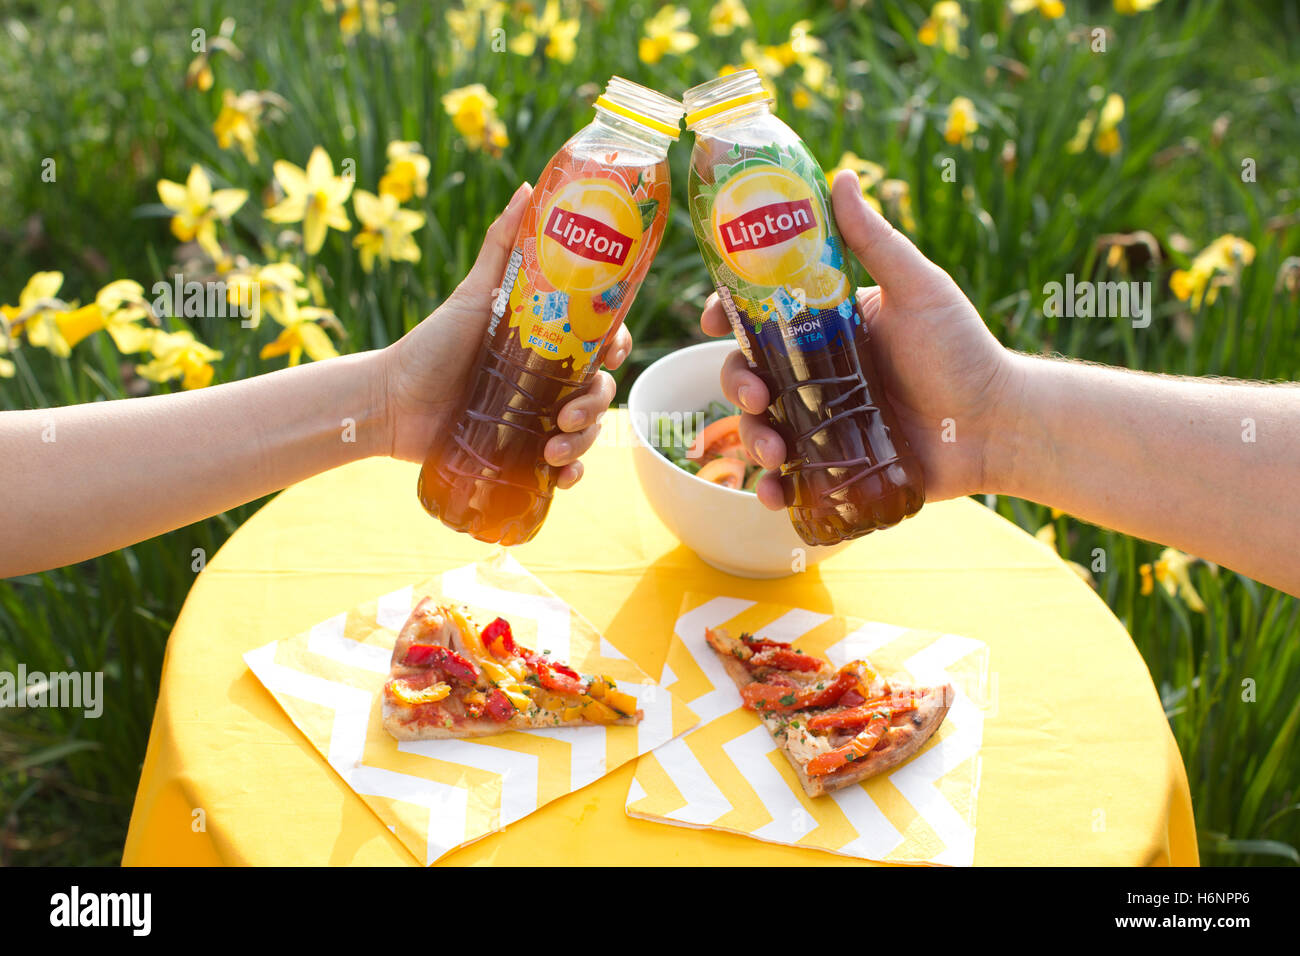 Lipton Ice Tea drinks Stock Photo - Alamy